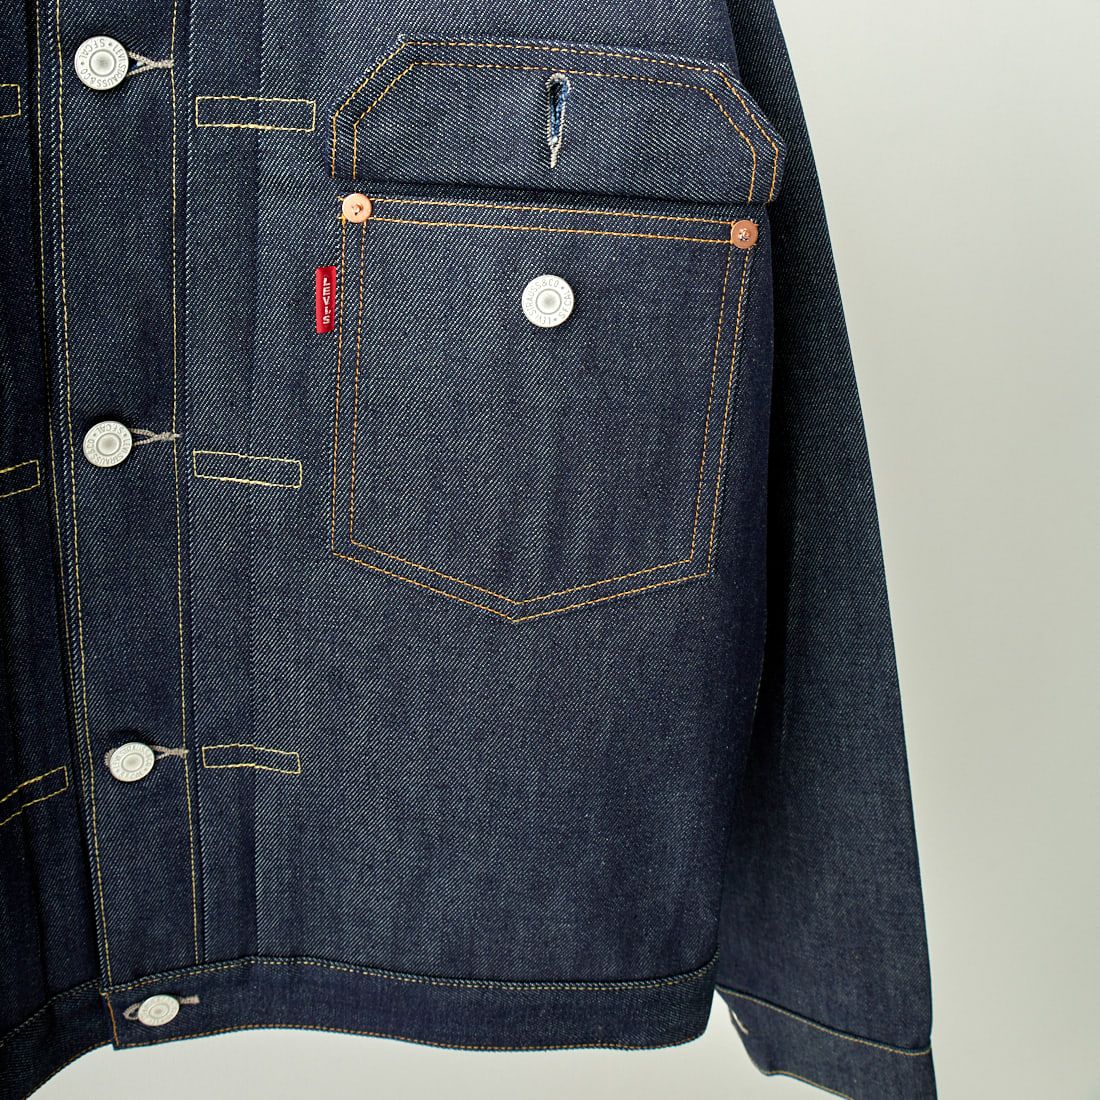 LEVIS Vintage Clothing [リーバイス ヴィンテージ クロージング] 1936モデル TYPE1ジャケット [70506-00] 28 RIGID